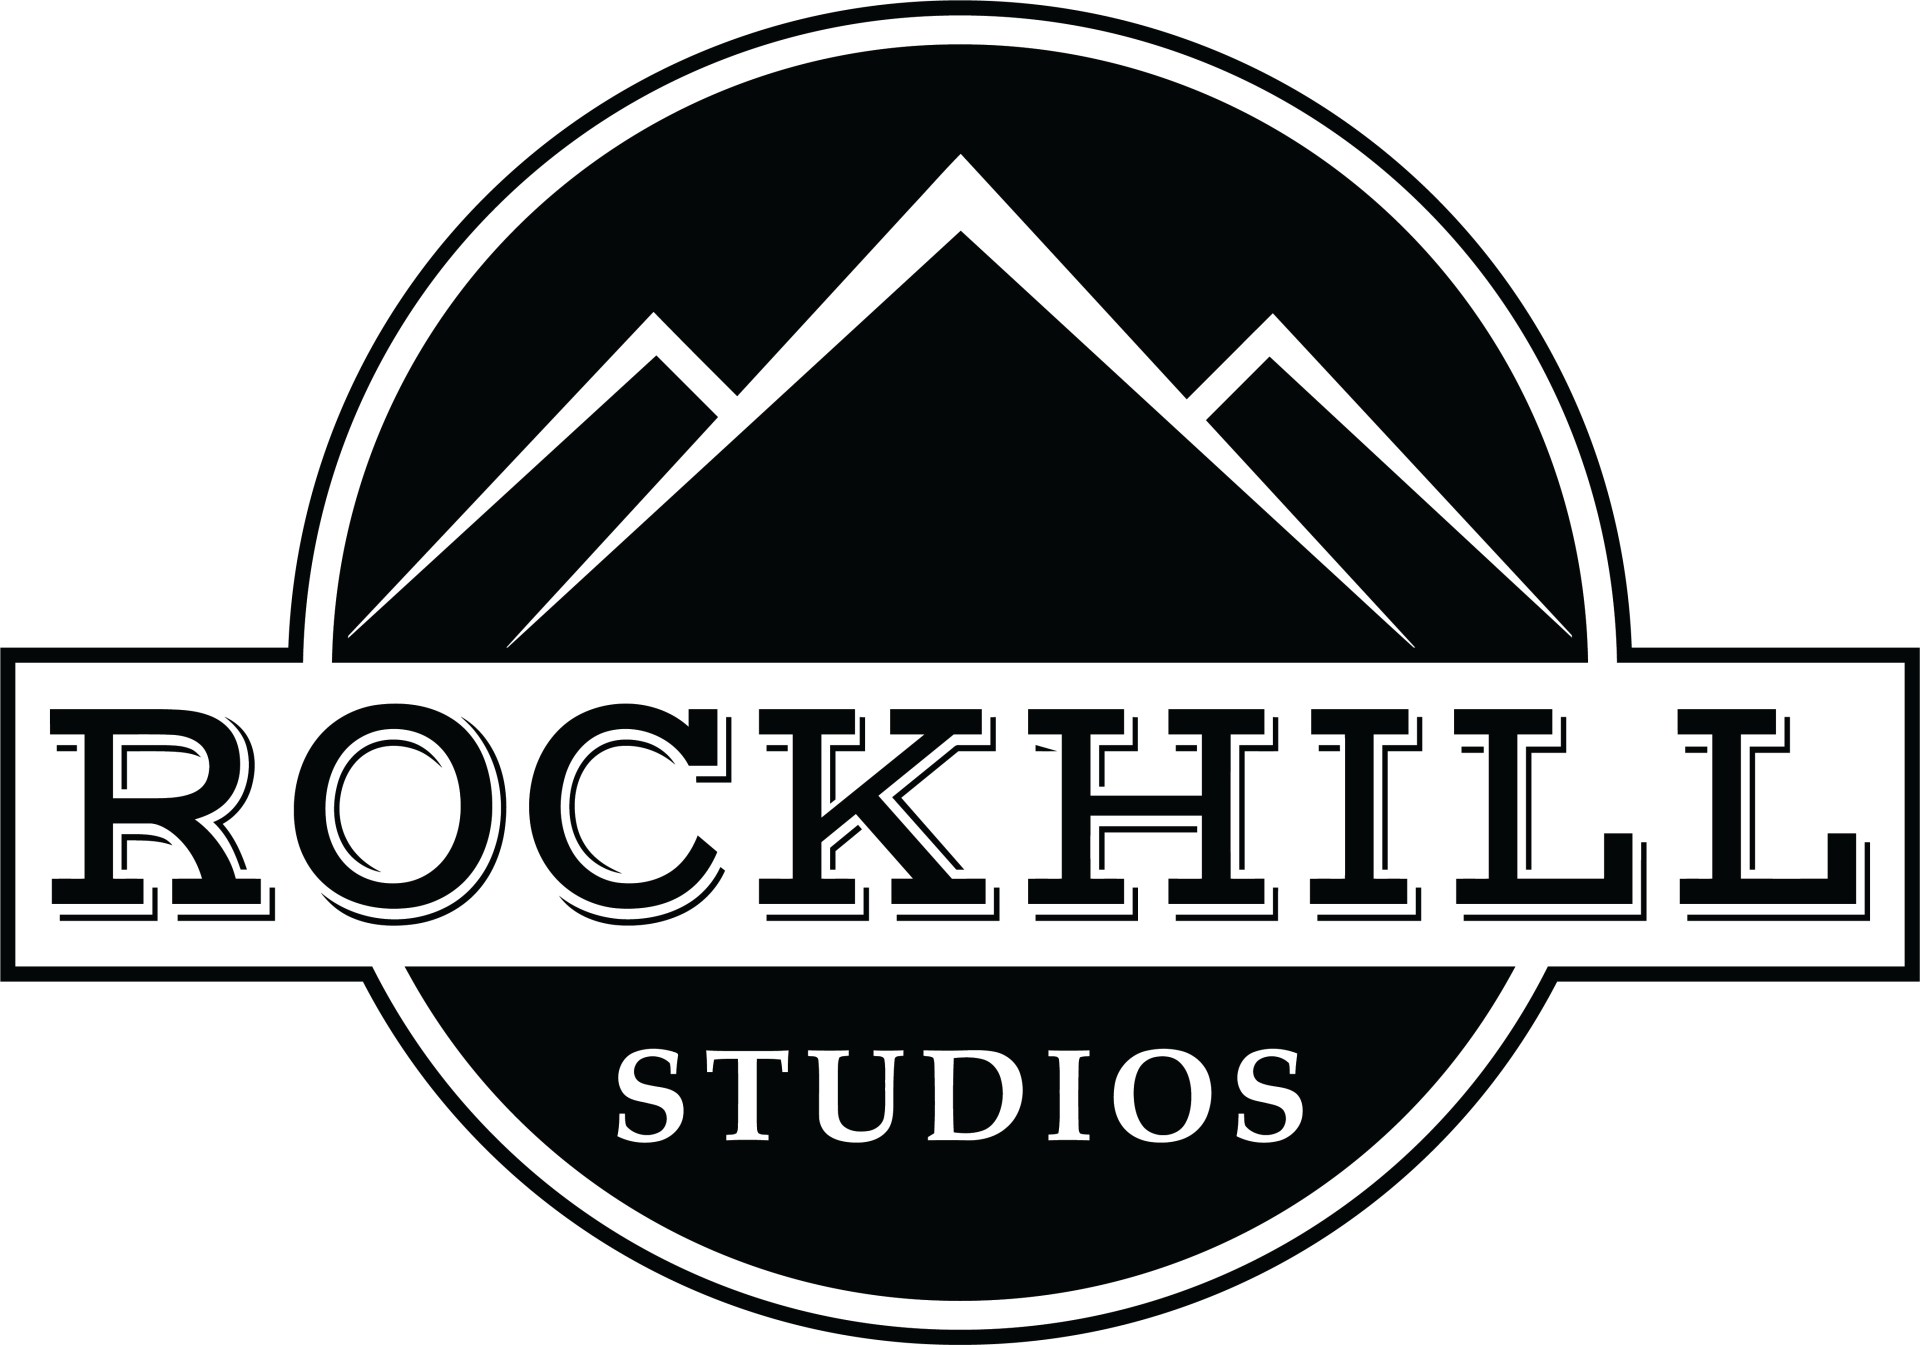 Rockhill Studios Header logo